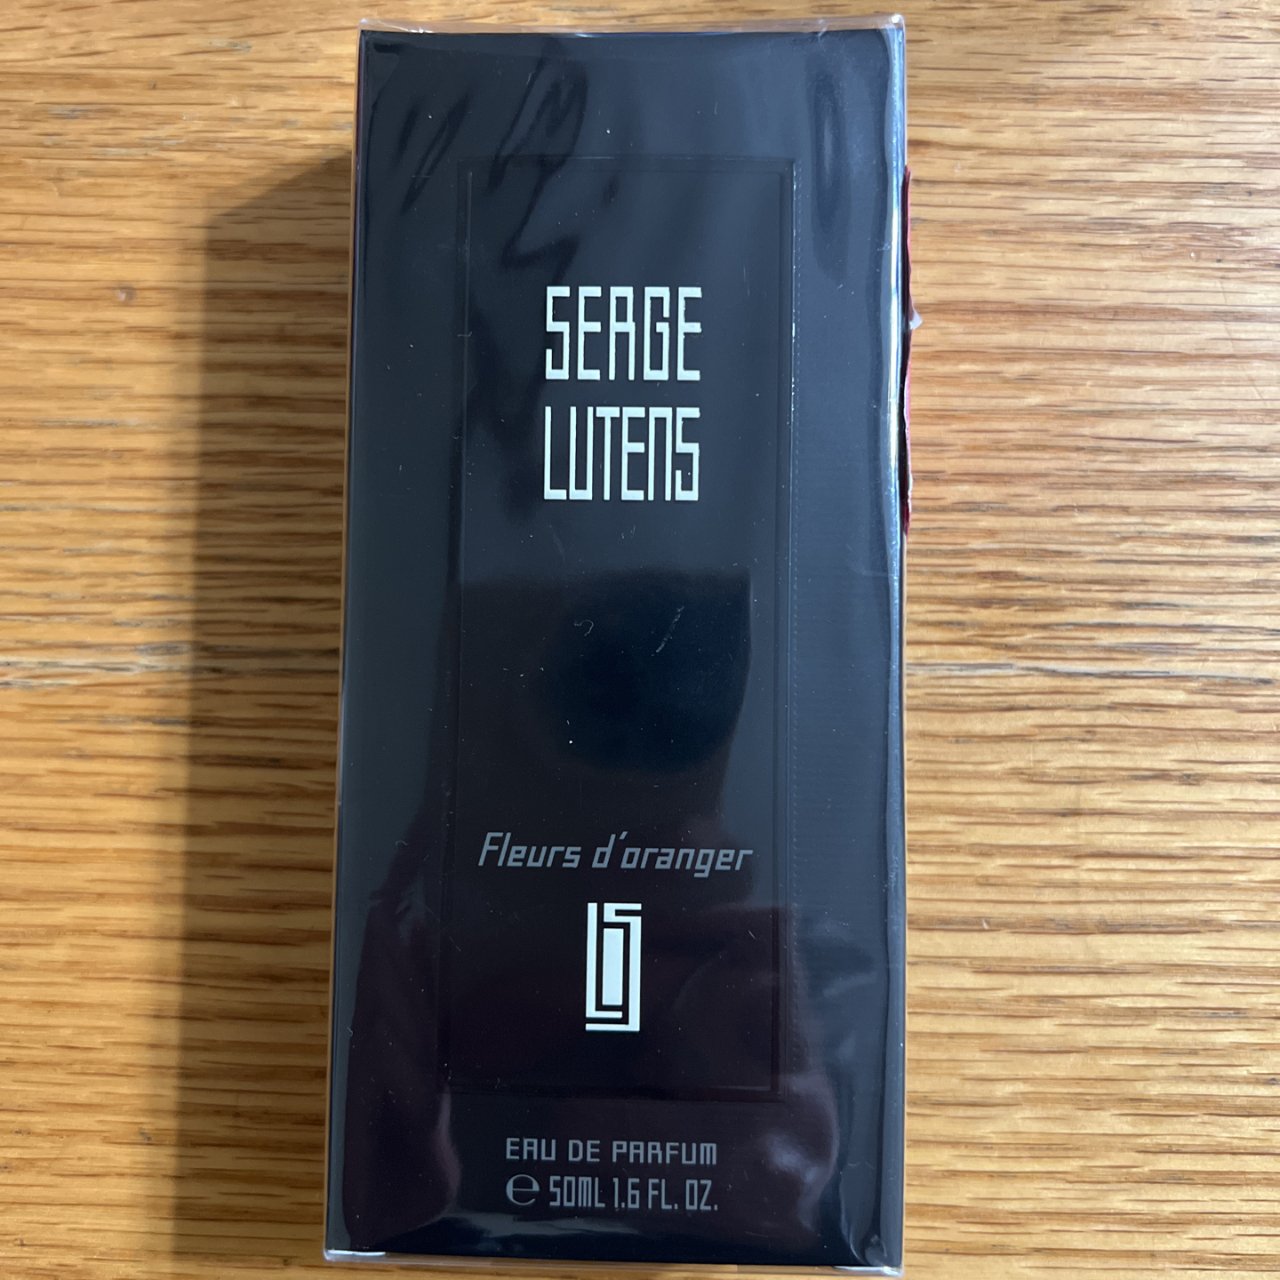 Fleurs d'oranger - Perfume | Serge Lutens - Official Website